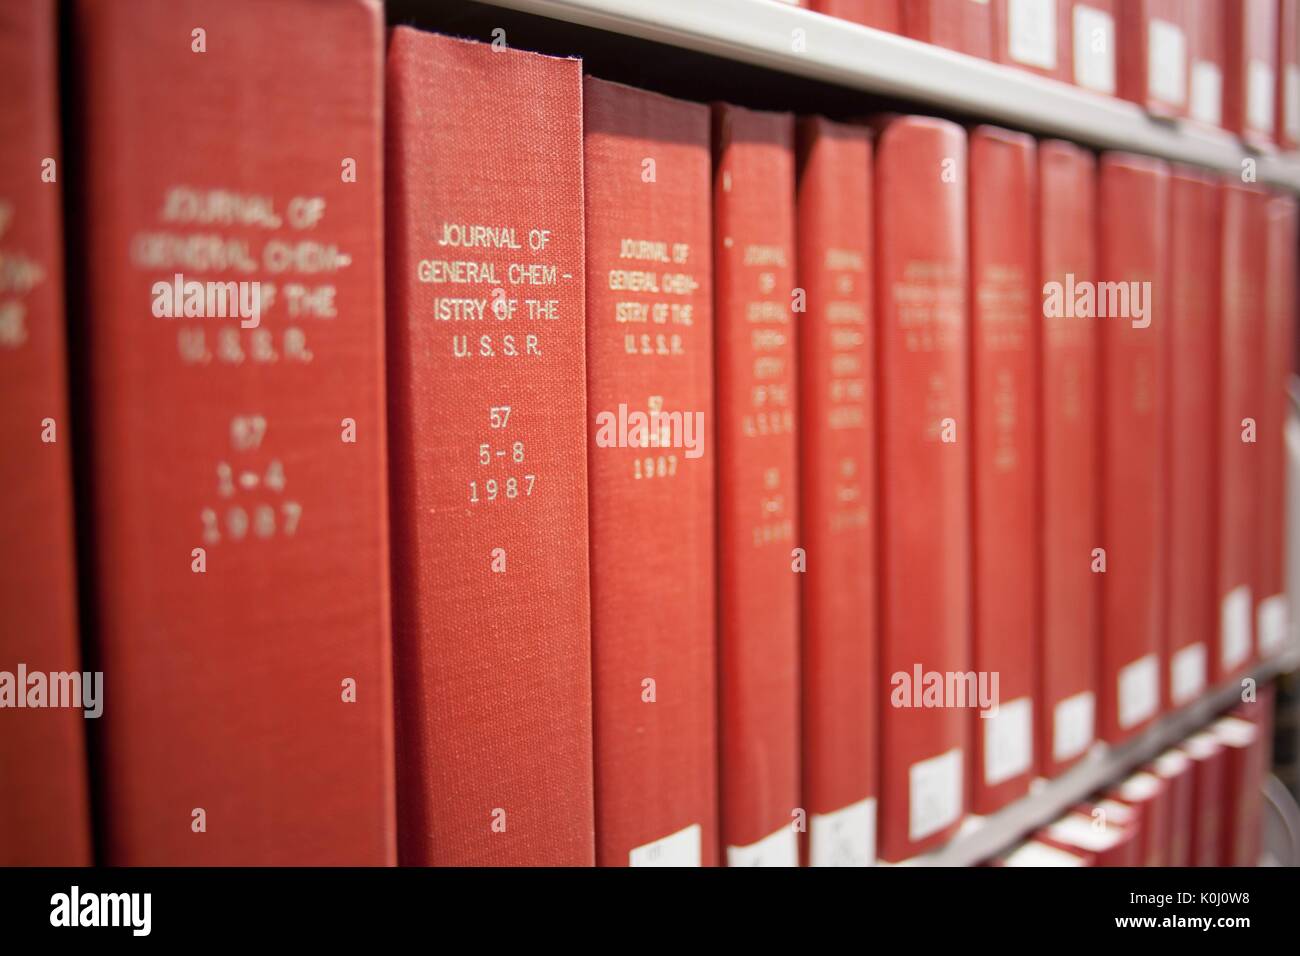 Libri rossi immagini e fotografie stock ad alta risoluzione - Alamy